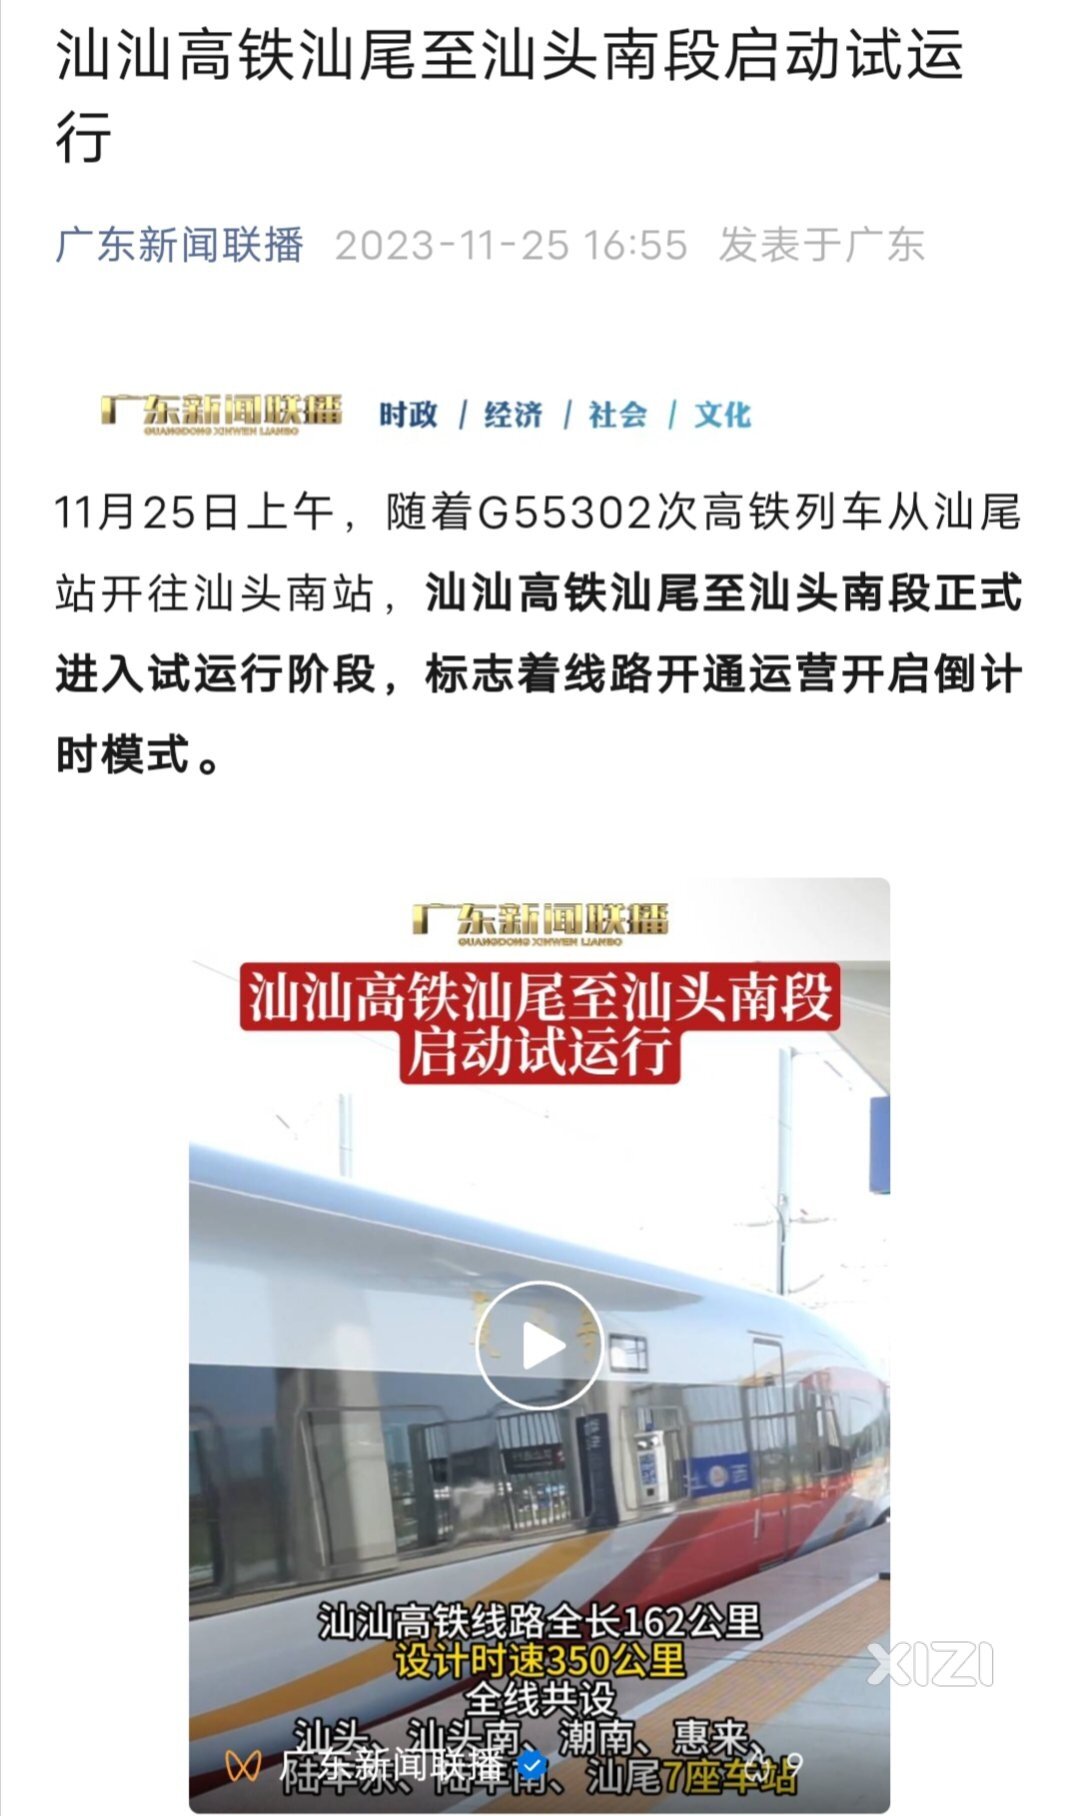 甬广高铁汕汕段即将开通。惠州来往汕头、福建浙江上海方向将更快